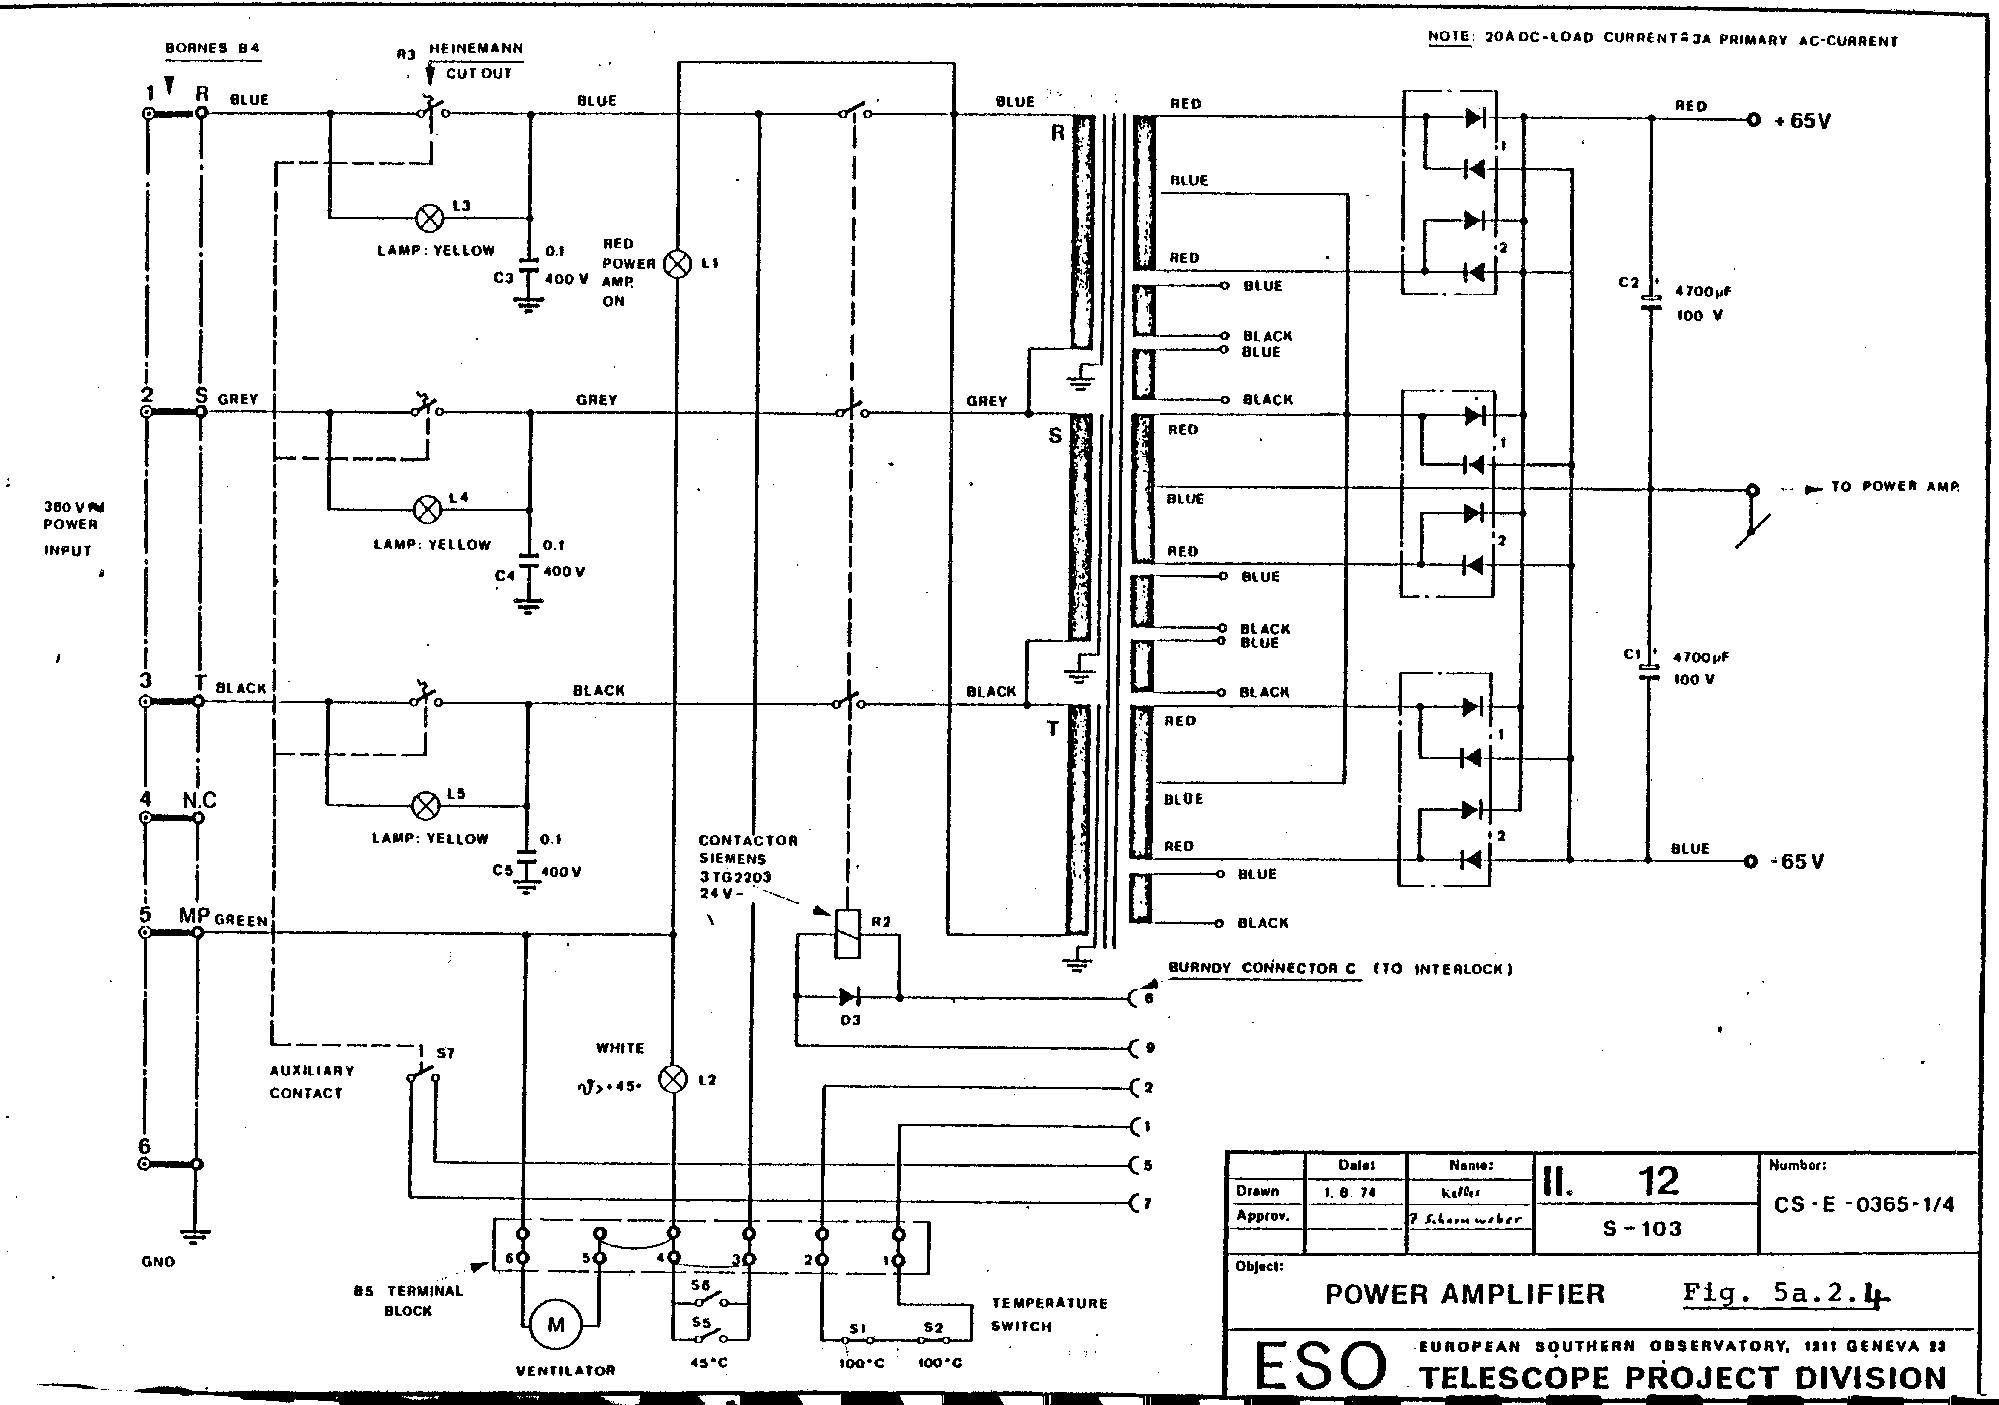 3 Phase Motor Wiring Diagram Generator Wiring Diagram Single Phase Pdfess Ac Circuit 3 Of 3 Phase Motor Wiring Diagram